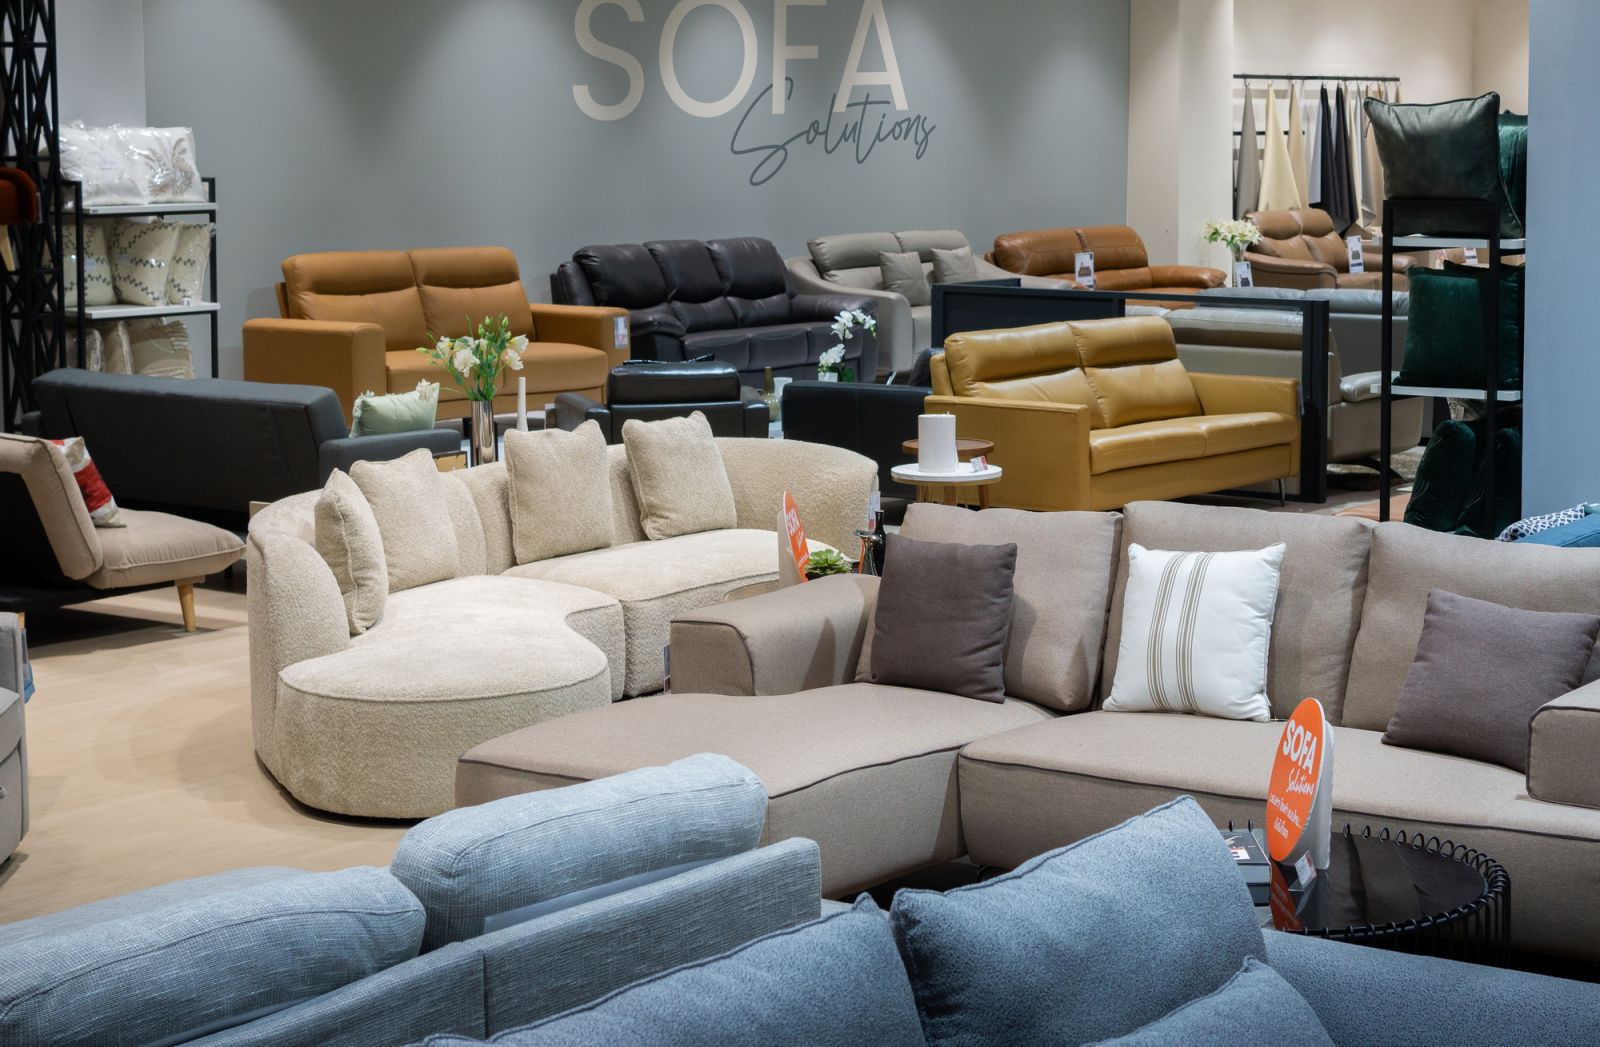 เอสบี ดีไซน์สแควร์ เปิดโซนใหม่ “Sofa Solutions” Destination ของศูนย์รวมโซฟาแห่งแรกที่มีให้เลือกมากกว่า 500 แบบ